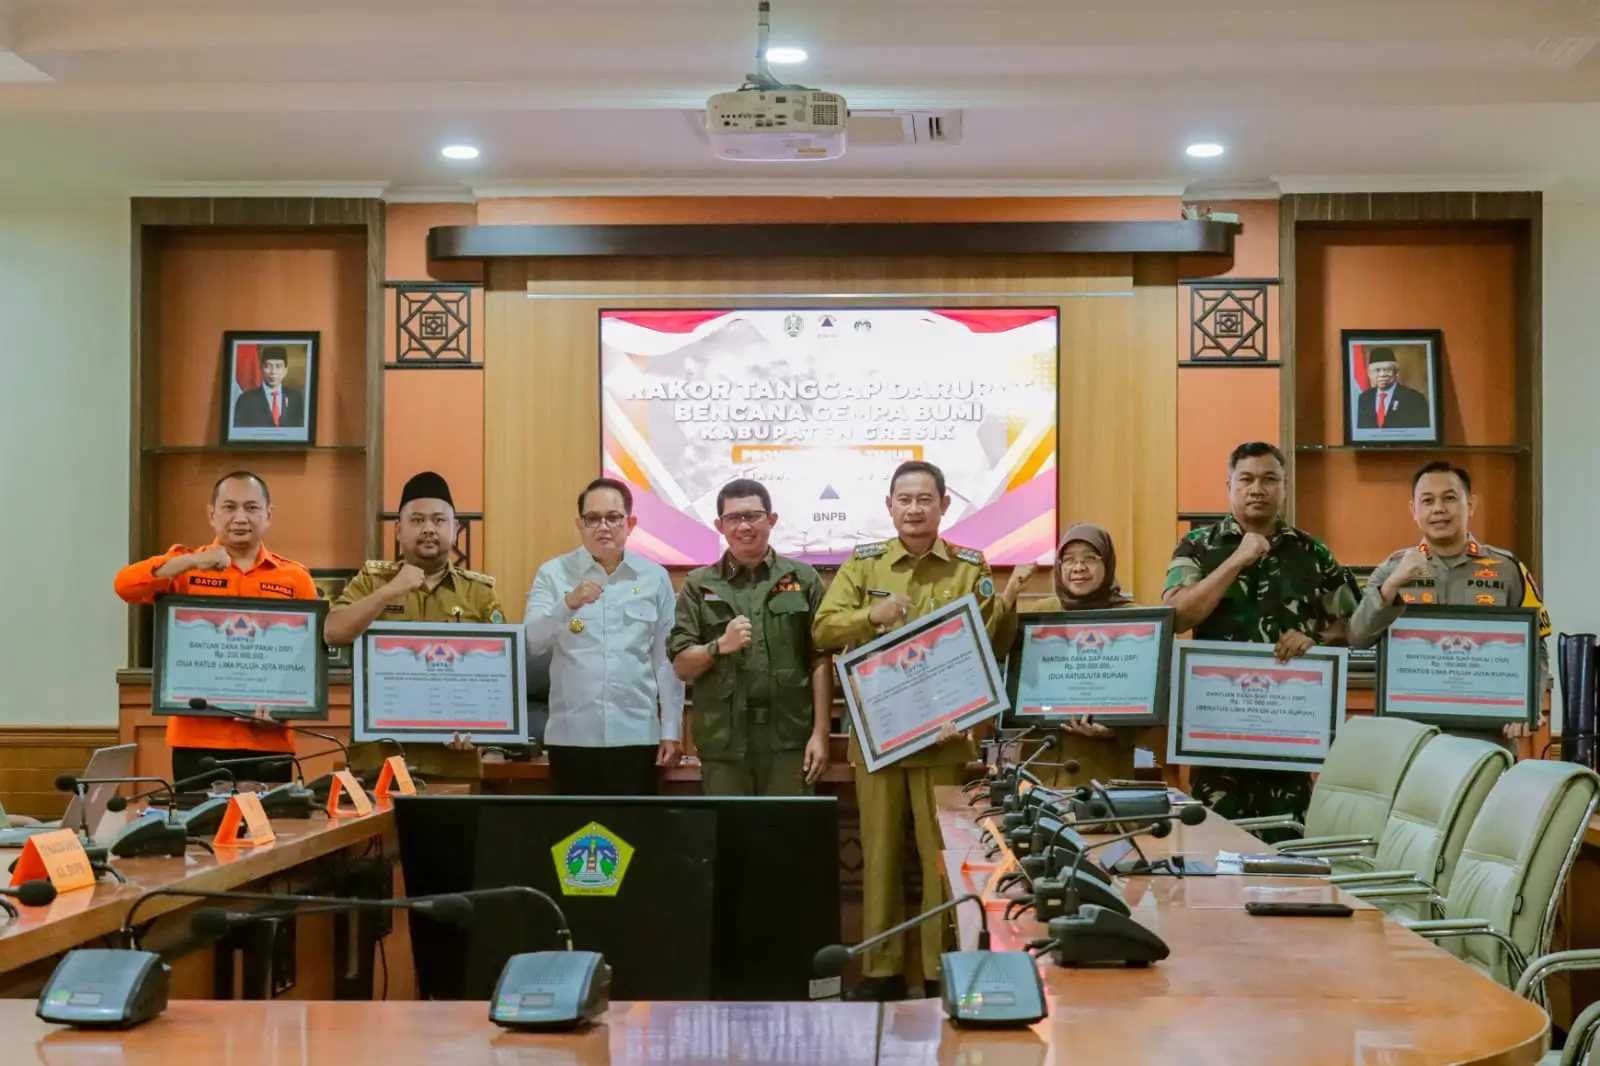 Kepala BNPB Letjen TNI Suharyanto, S.Sos., M.M (kemeja dan rompi hijau) saat memberikan simbolis dukungan bantuan penanganan darurat kepada pemerintah daerah, pada Rapat Koordinasi Penanganan Darurat Gempa di Kantor Bupati Gresik, Jawa Timur pada Senin (25/3).